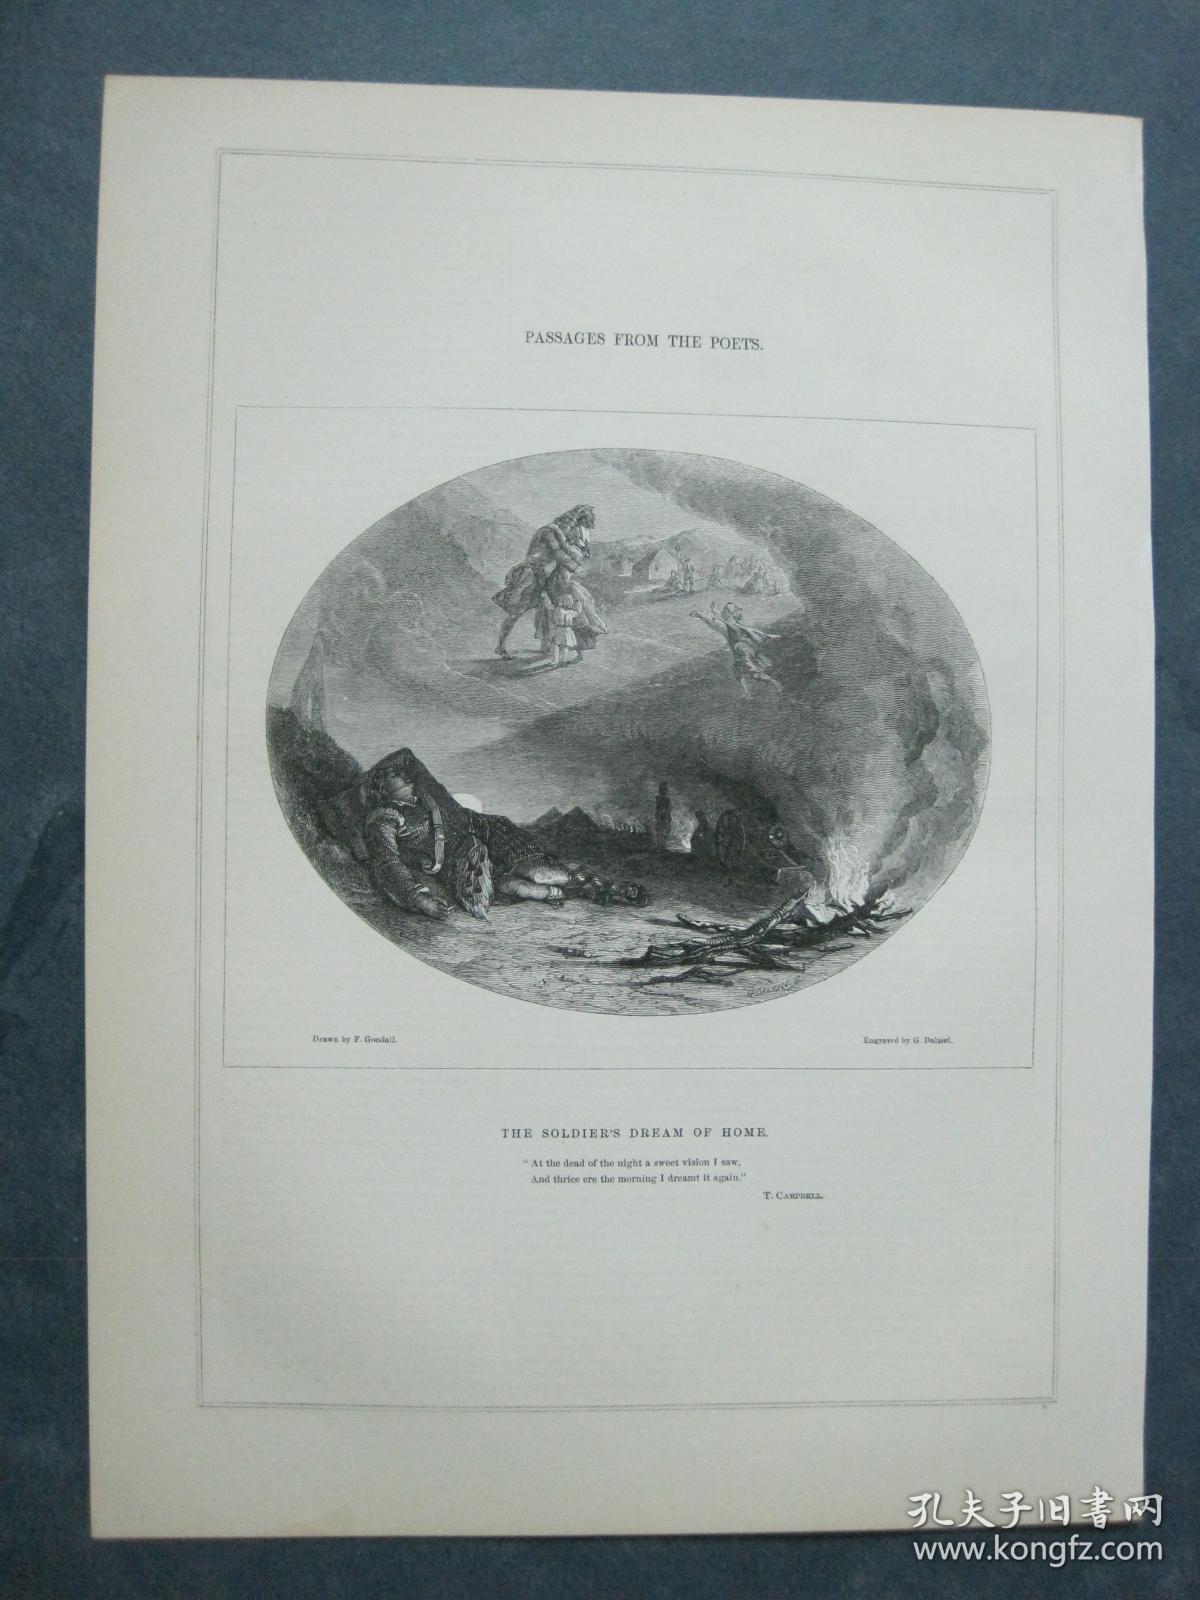 1850年 木口木刻 木版画 PASSAGES FROM THE POETS系列之5 《THE SOLDIER'S DREAM OF HOME》 背面有文字